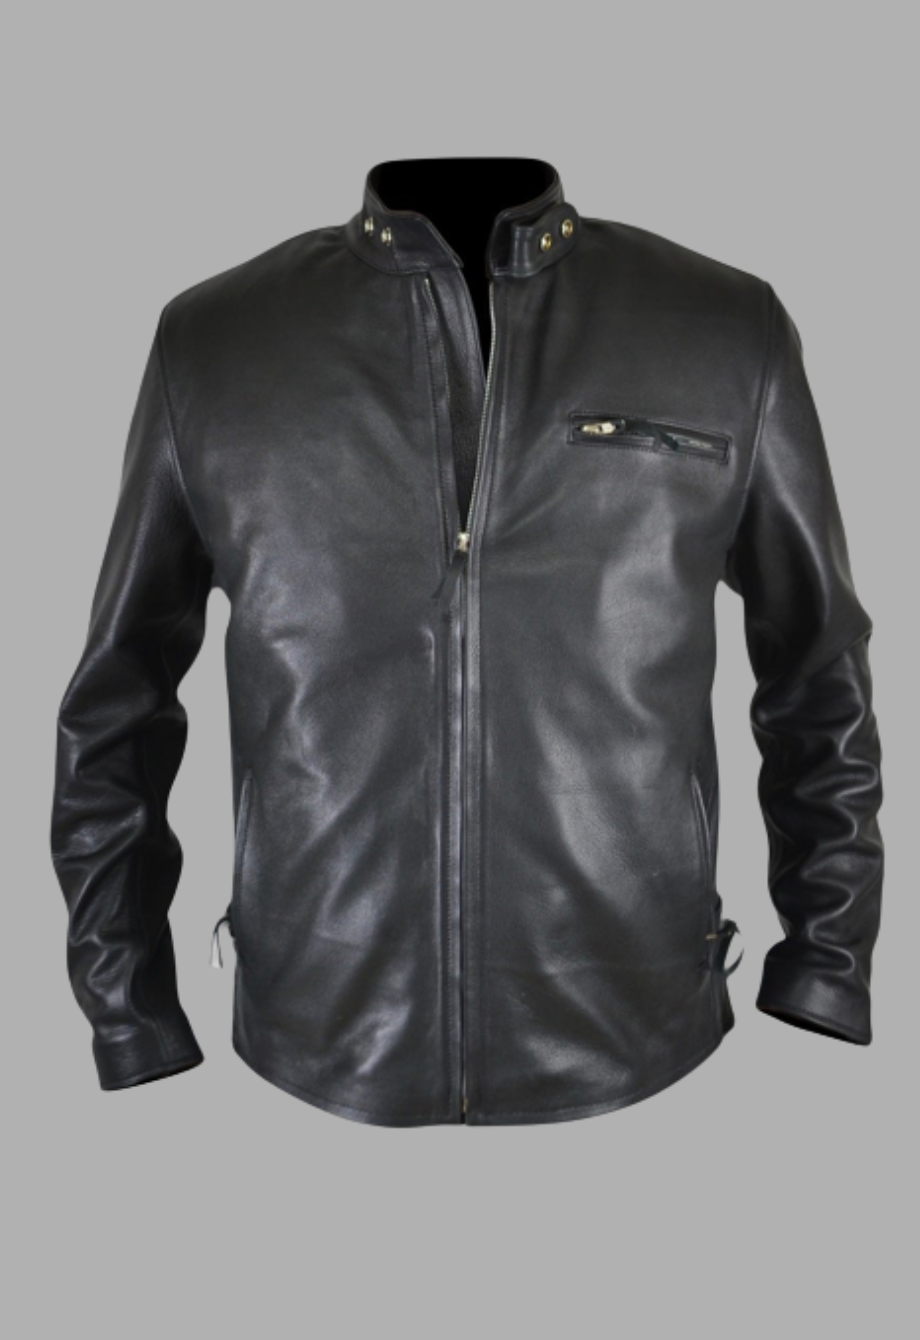 Mens Designer Motorcycle Black Racer Leather Jacket - Walmart.com